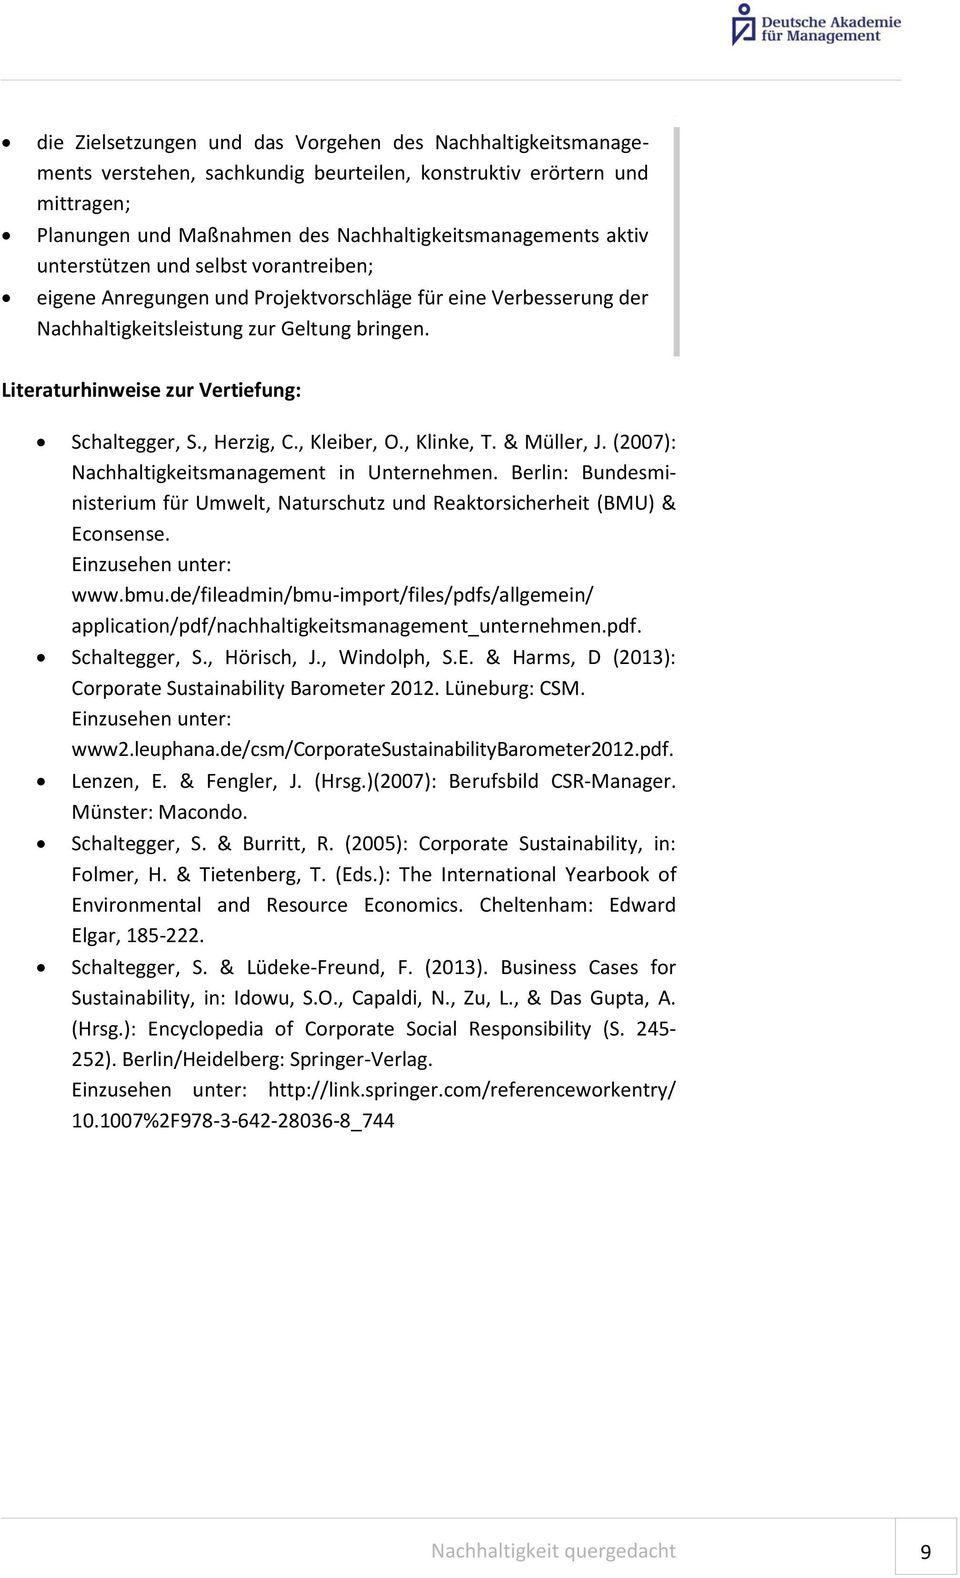 , Herzig, C., Kleiber, O., Klinke, T. & Müller, J. (2007): Nachhaltigkeitsmanagement in Unternehmen. Berlin: Bundesministerium für Umwelt, Naturschutz und Reaktorsicherheit (BMU) & Econsense.